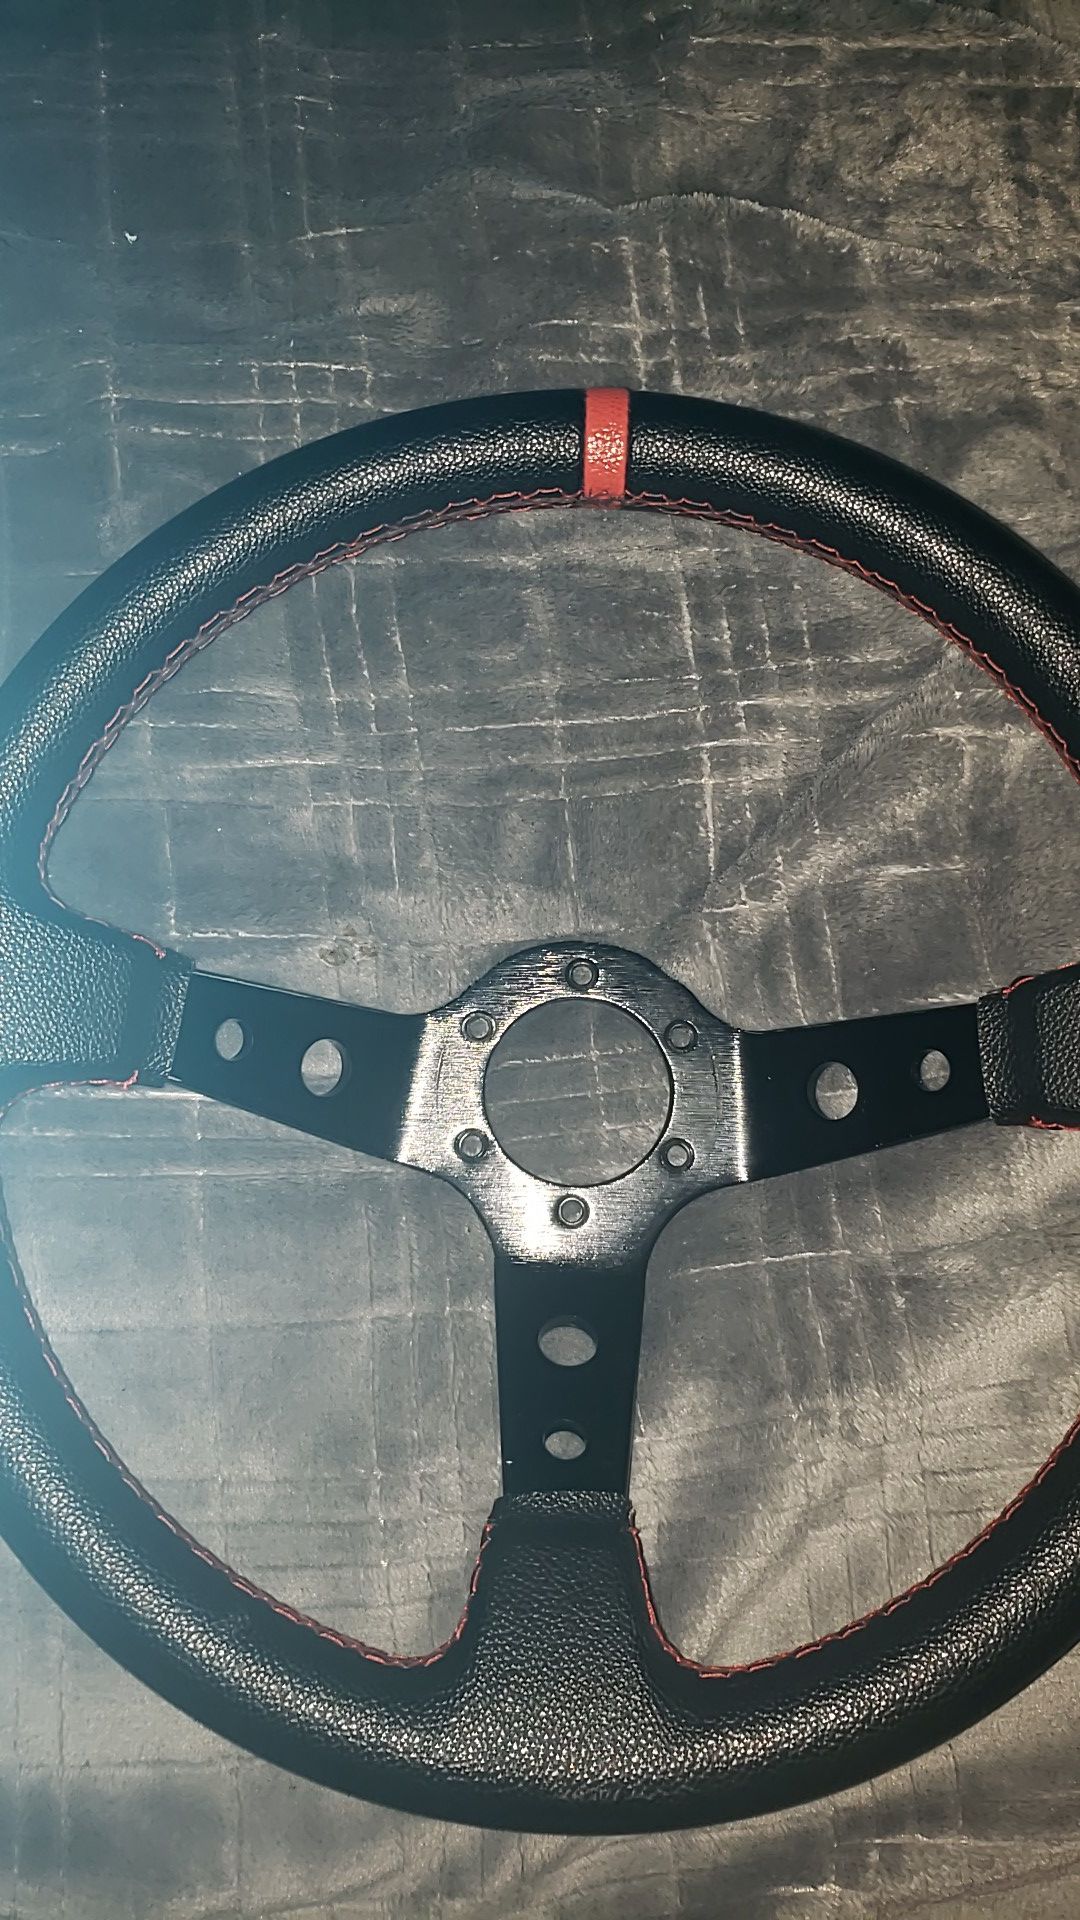 Quick release steering wheel